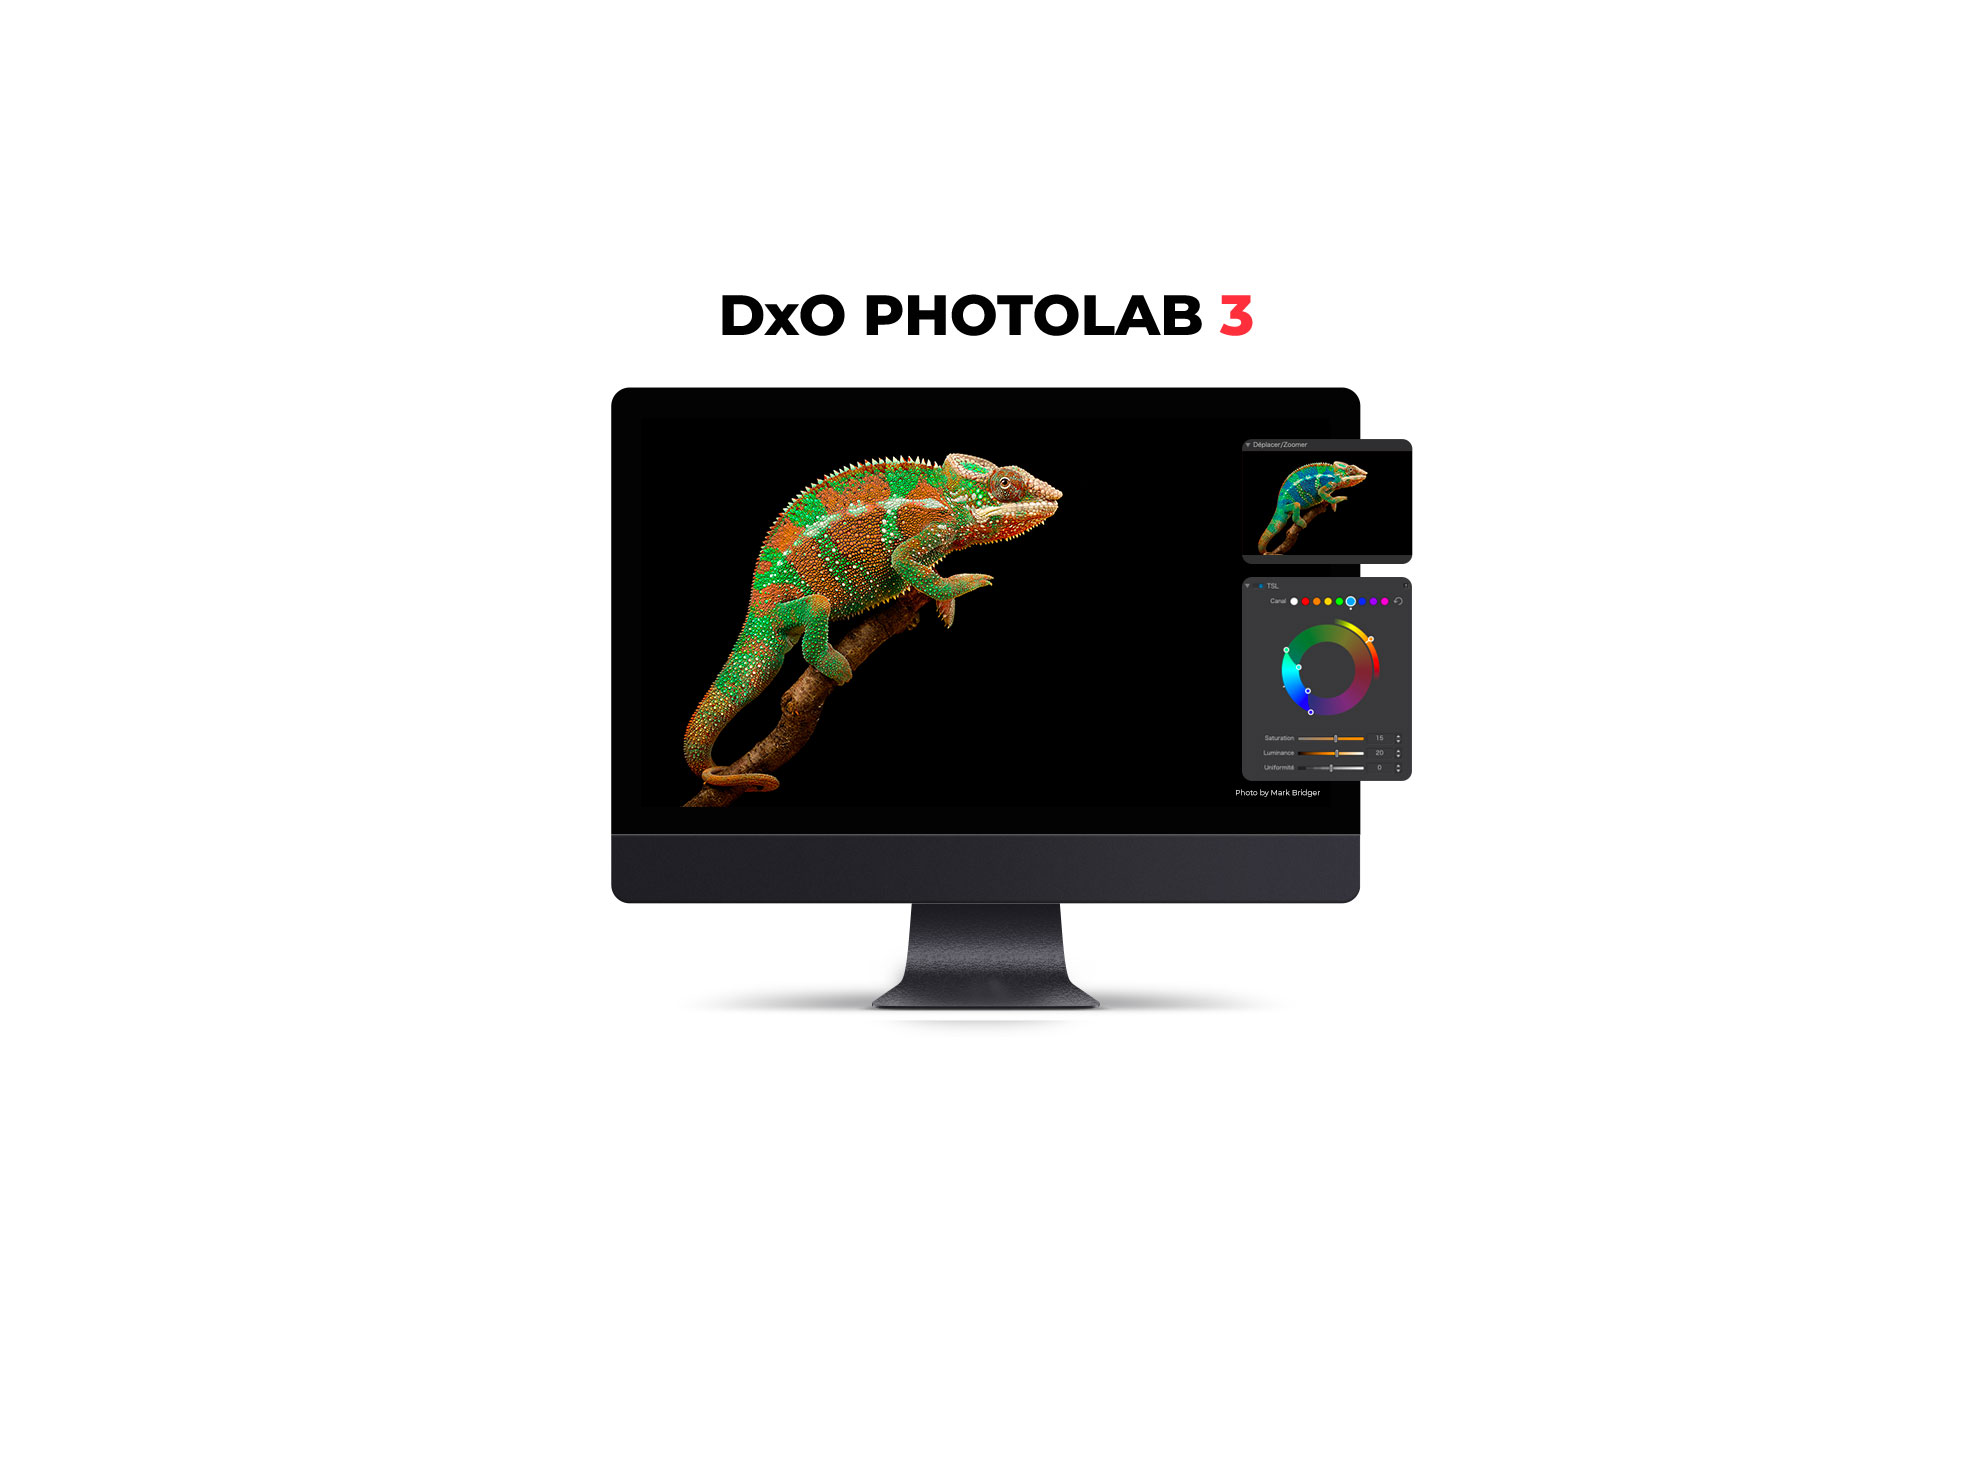 dxo photolab 3 promotional code